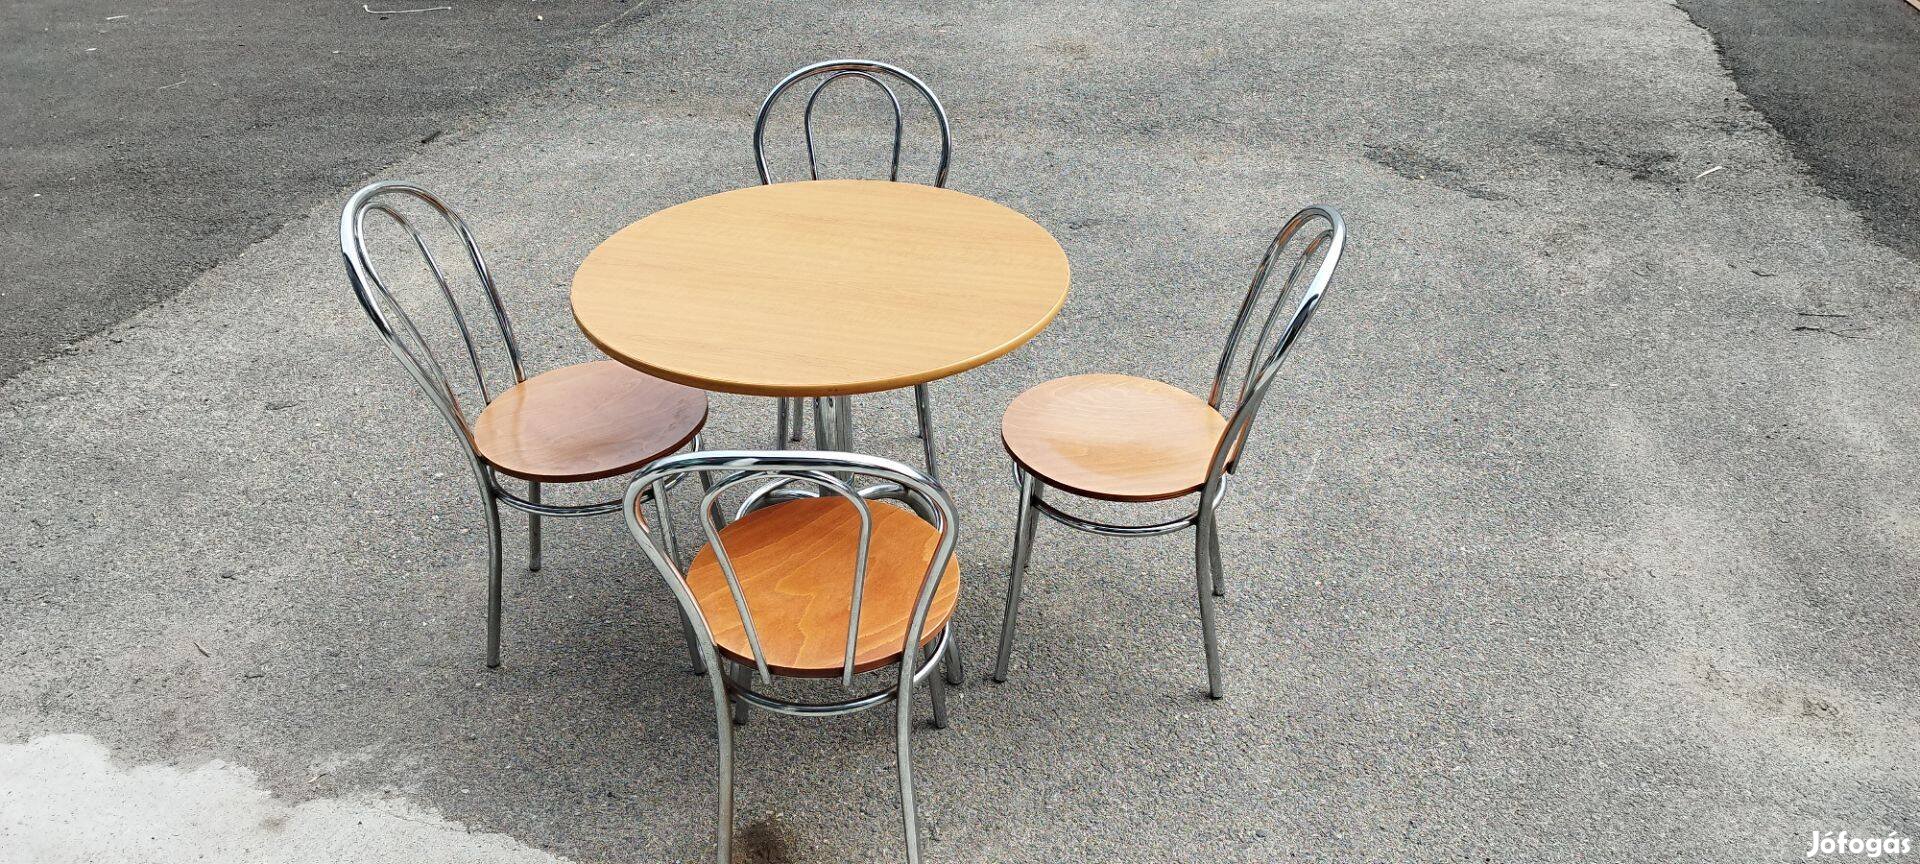 Fém-fa asztal székekkel